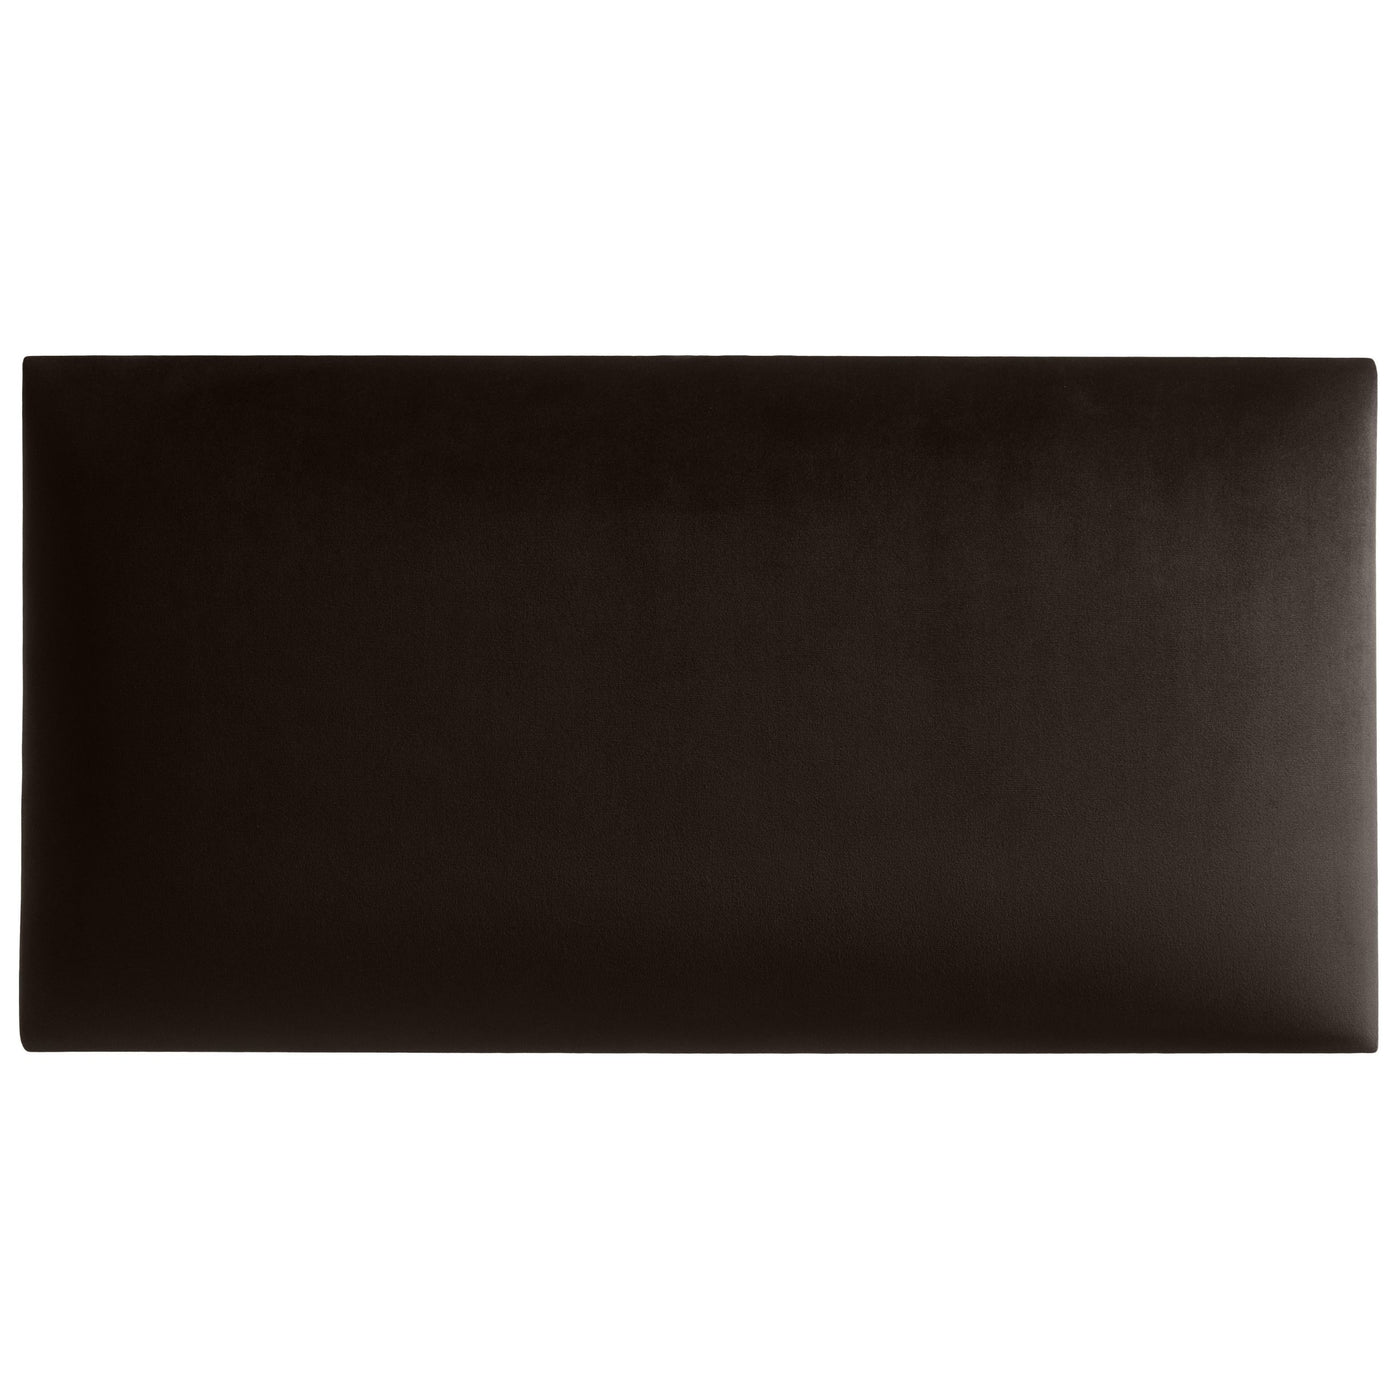 Wandkissen aus Samt Stoff der Rivera Kollektion in der Größe 60x30 mit der Farbe Dunkel-Braun RV28